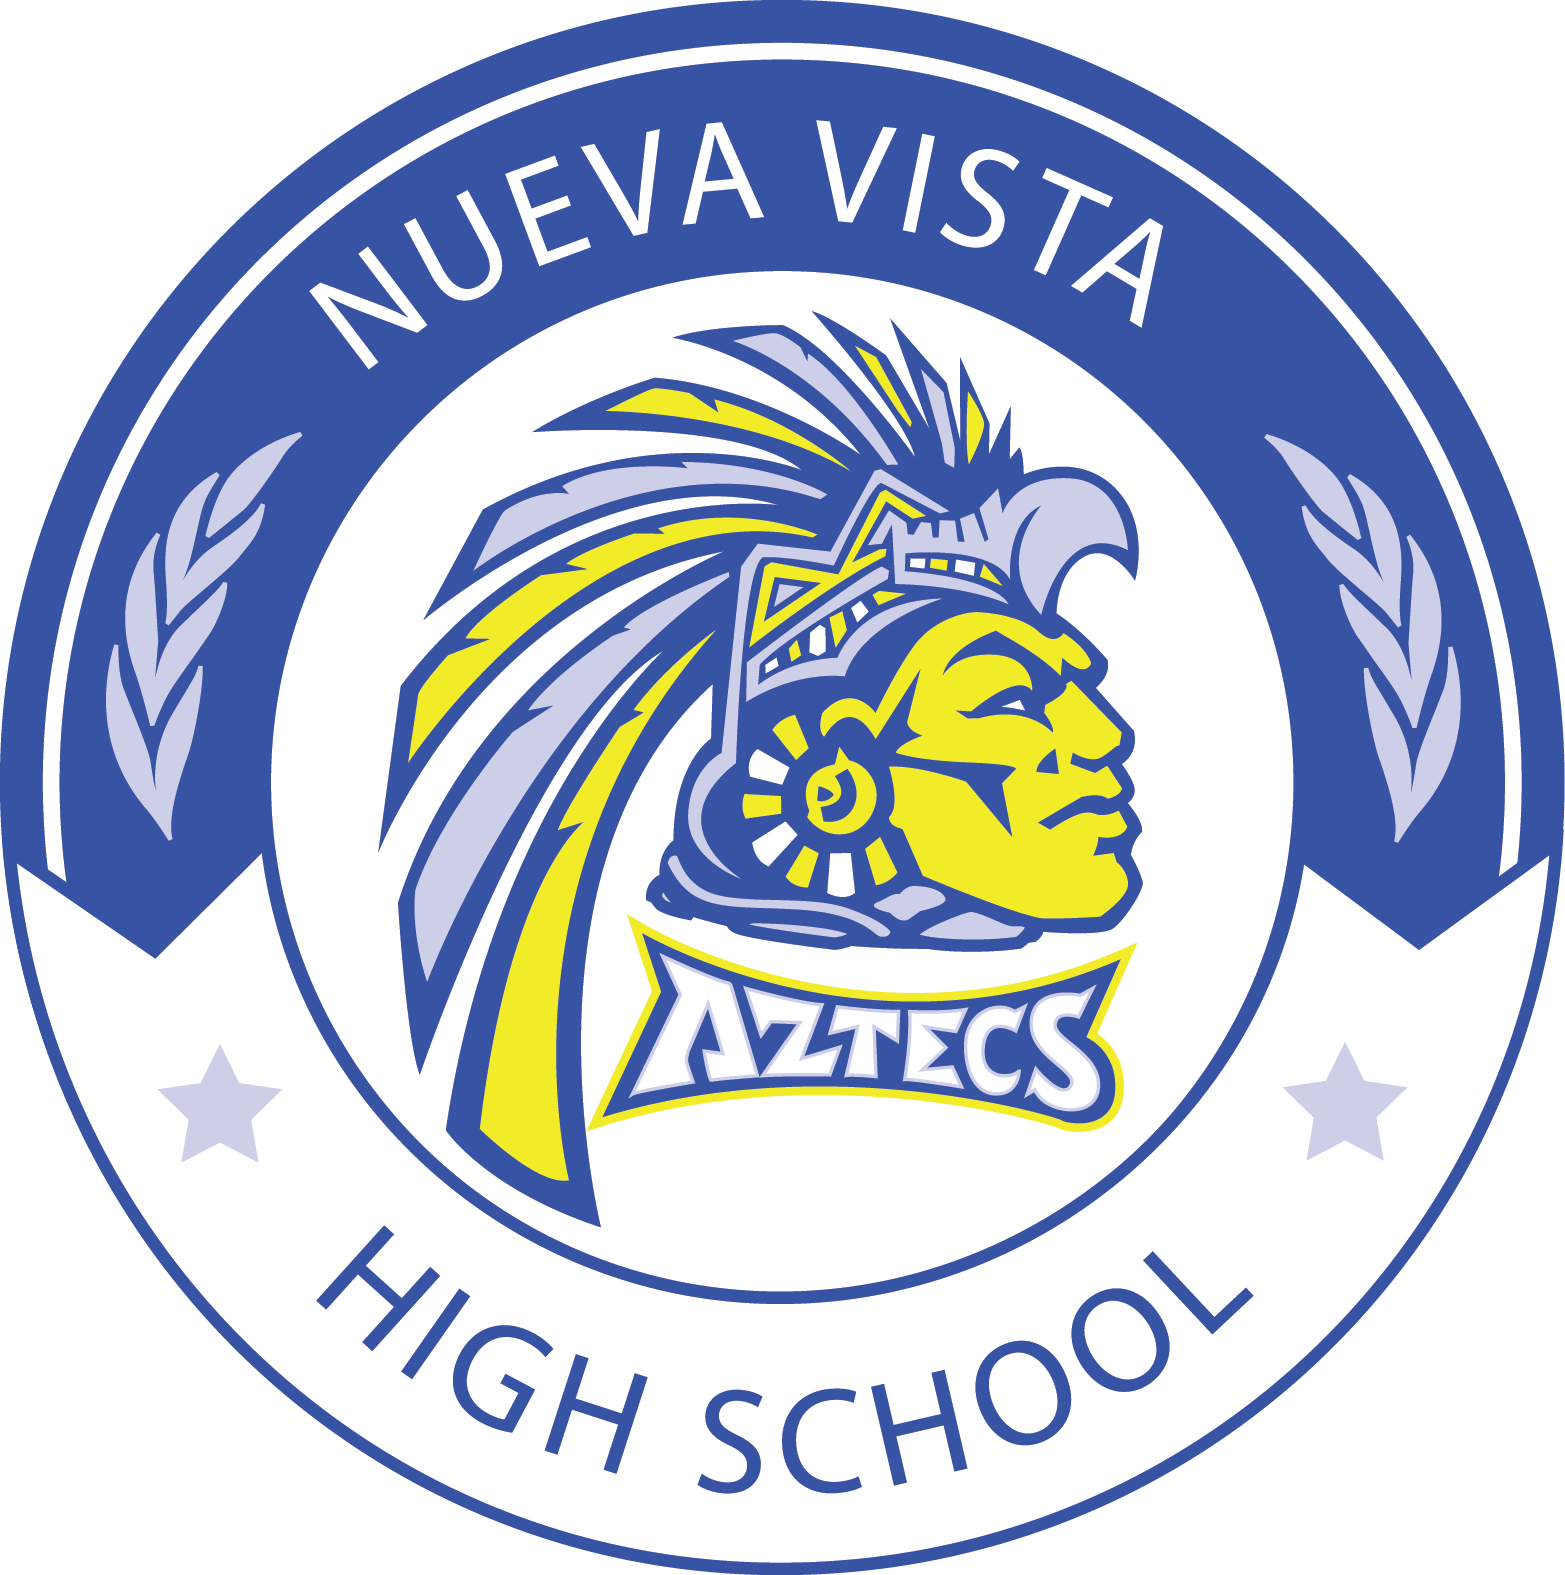 Nueva Vista HS logo.png